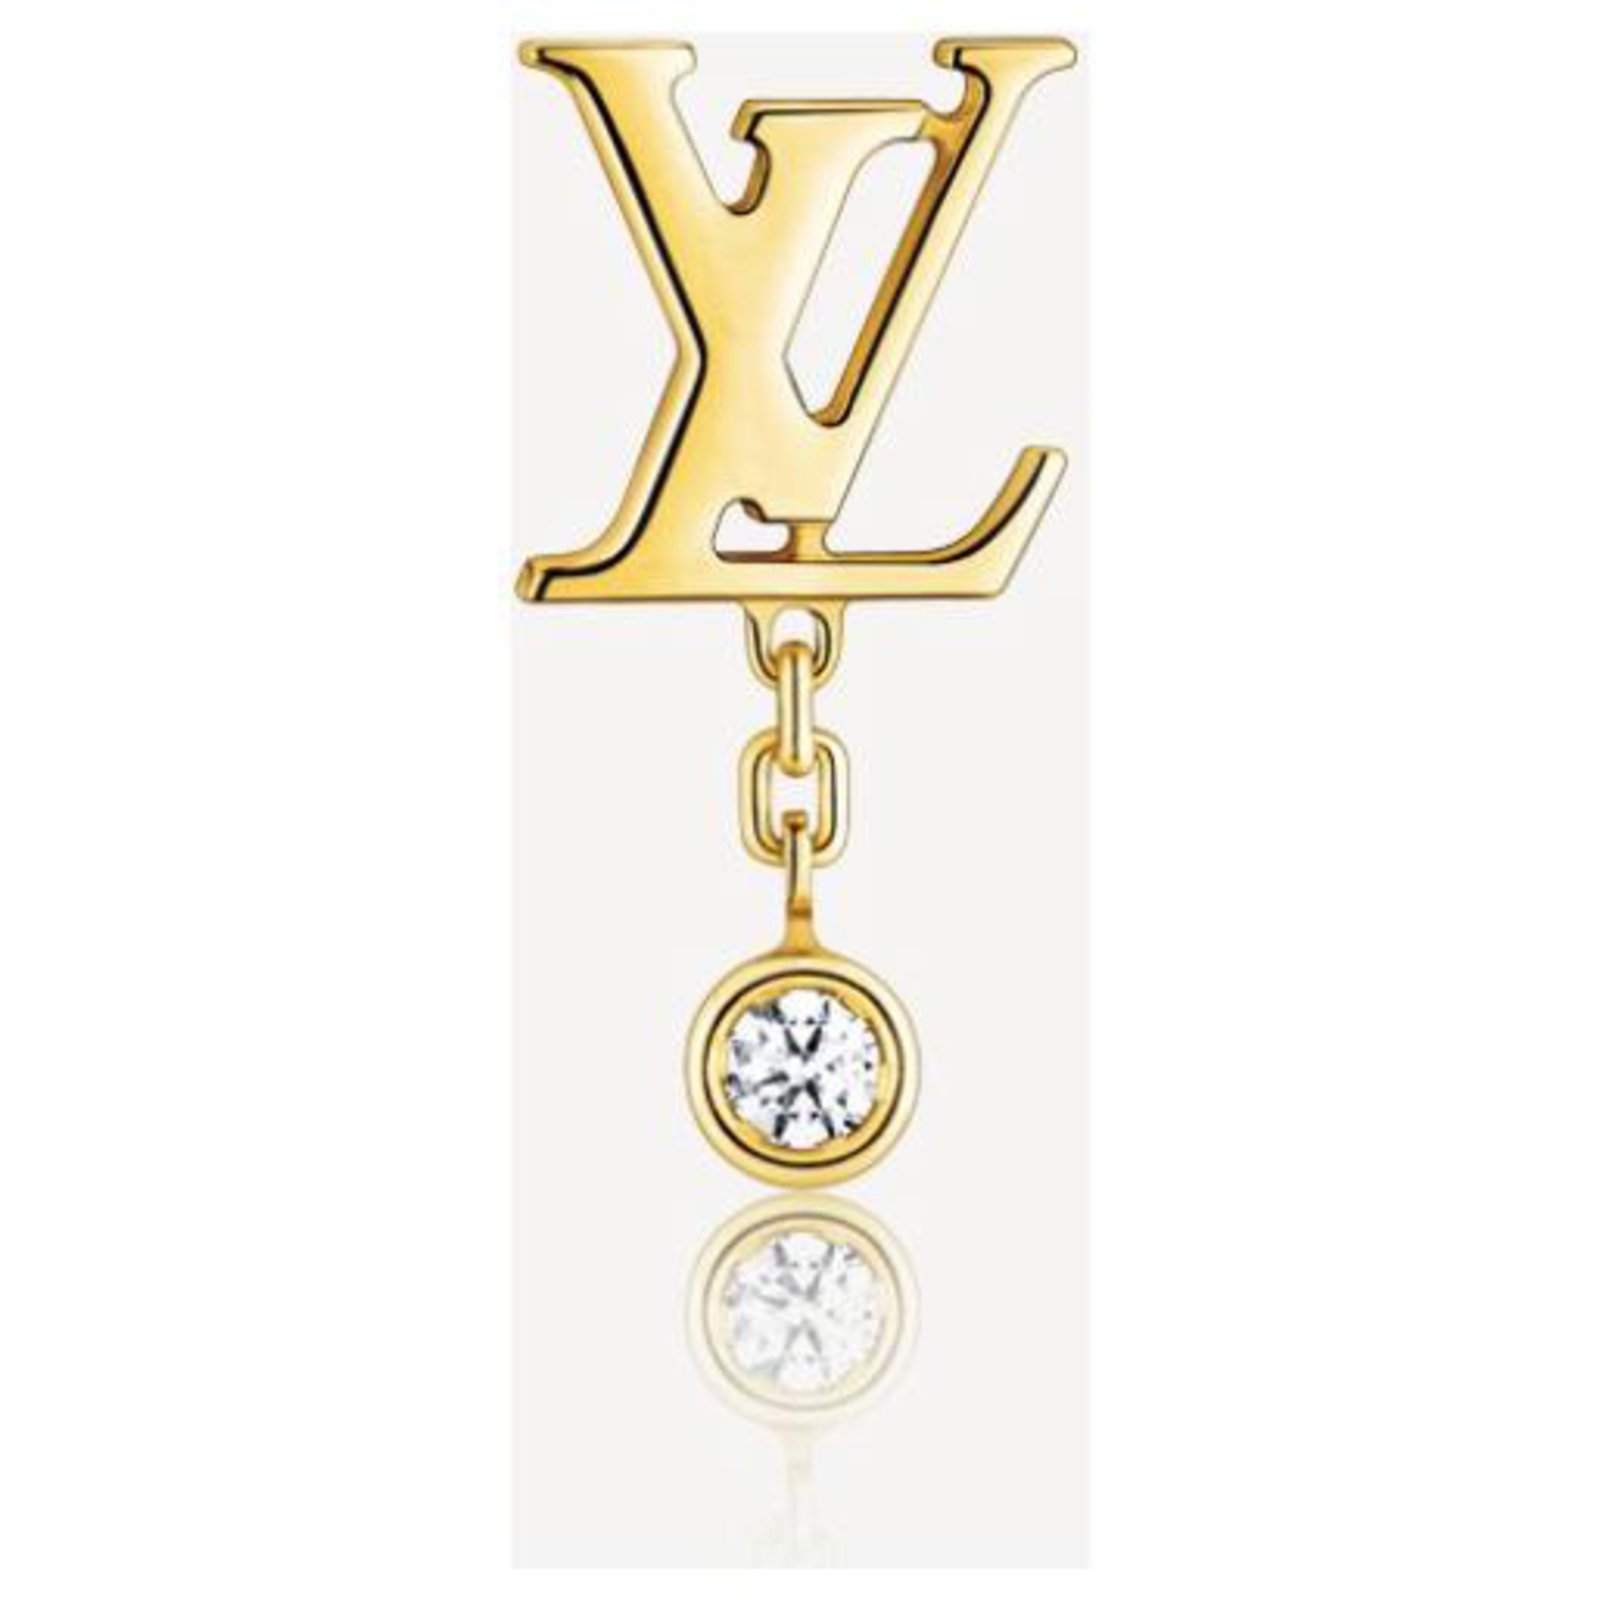 Louis Vuitton presenta su colección de joyas Monogram Idylle